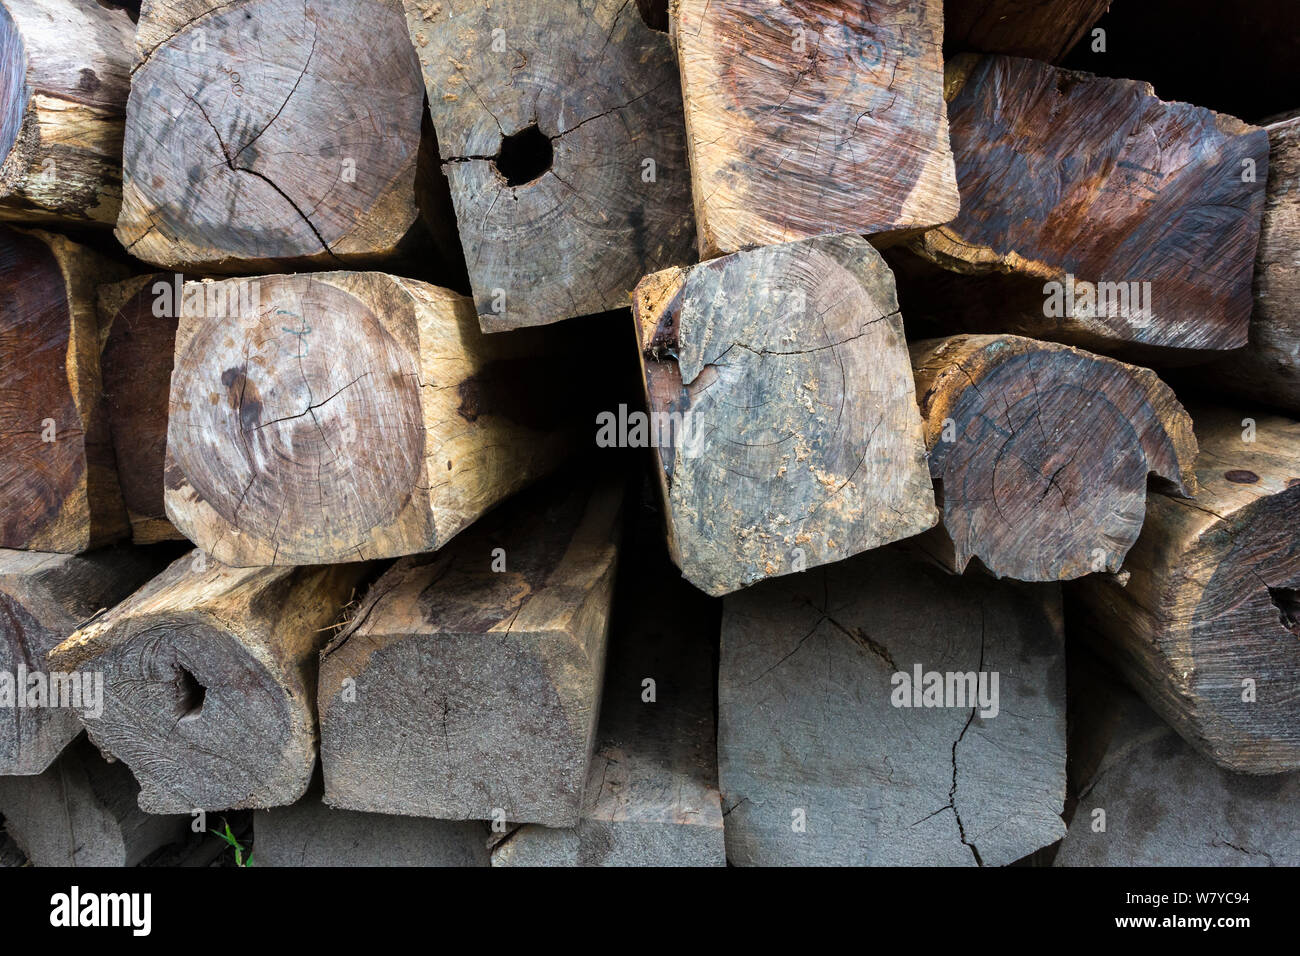 Siam rosewood Dalbergia cochinchinensis (bois) confisqués à des braconniers, stockées en tant que preuve, Thap Lan National Park, Complexe forestier de Dong Phayayen-Khao Yai, Thaïlande, de l'est août. Banque D'Images